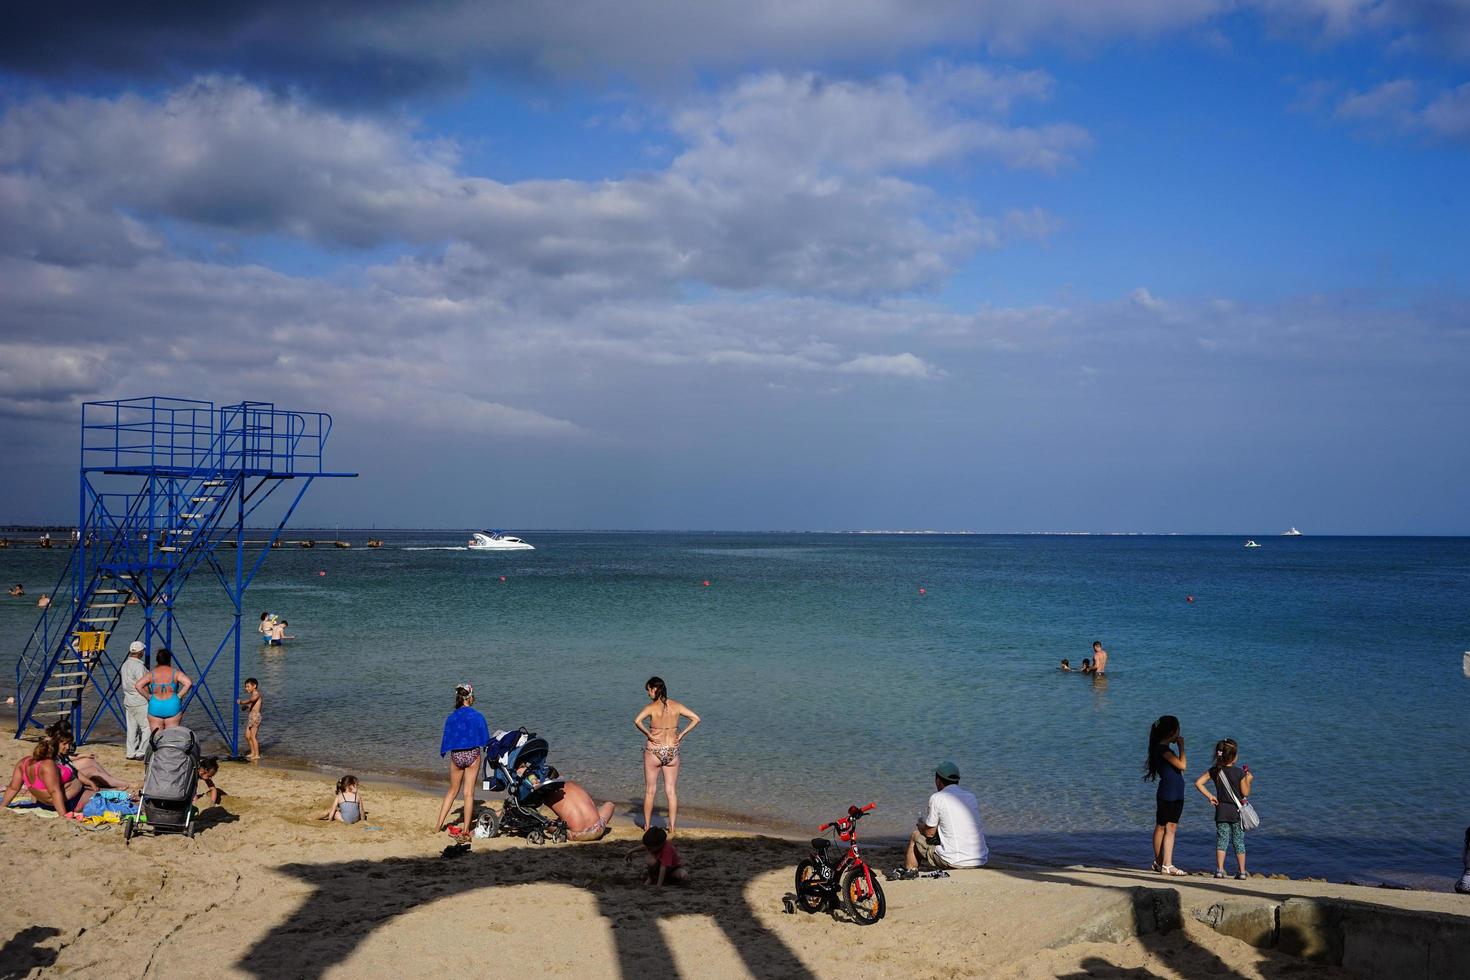 evpatoria, crimea-20 juni 2015 - stadspromenad vid havet med stranden och semesterfirare. foto